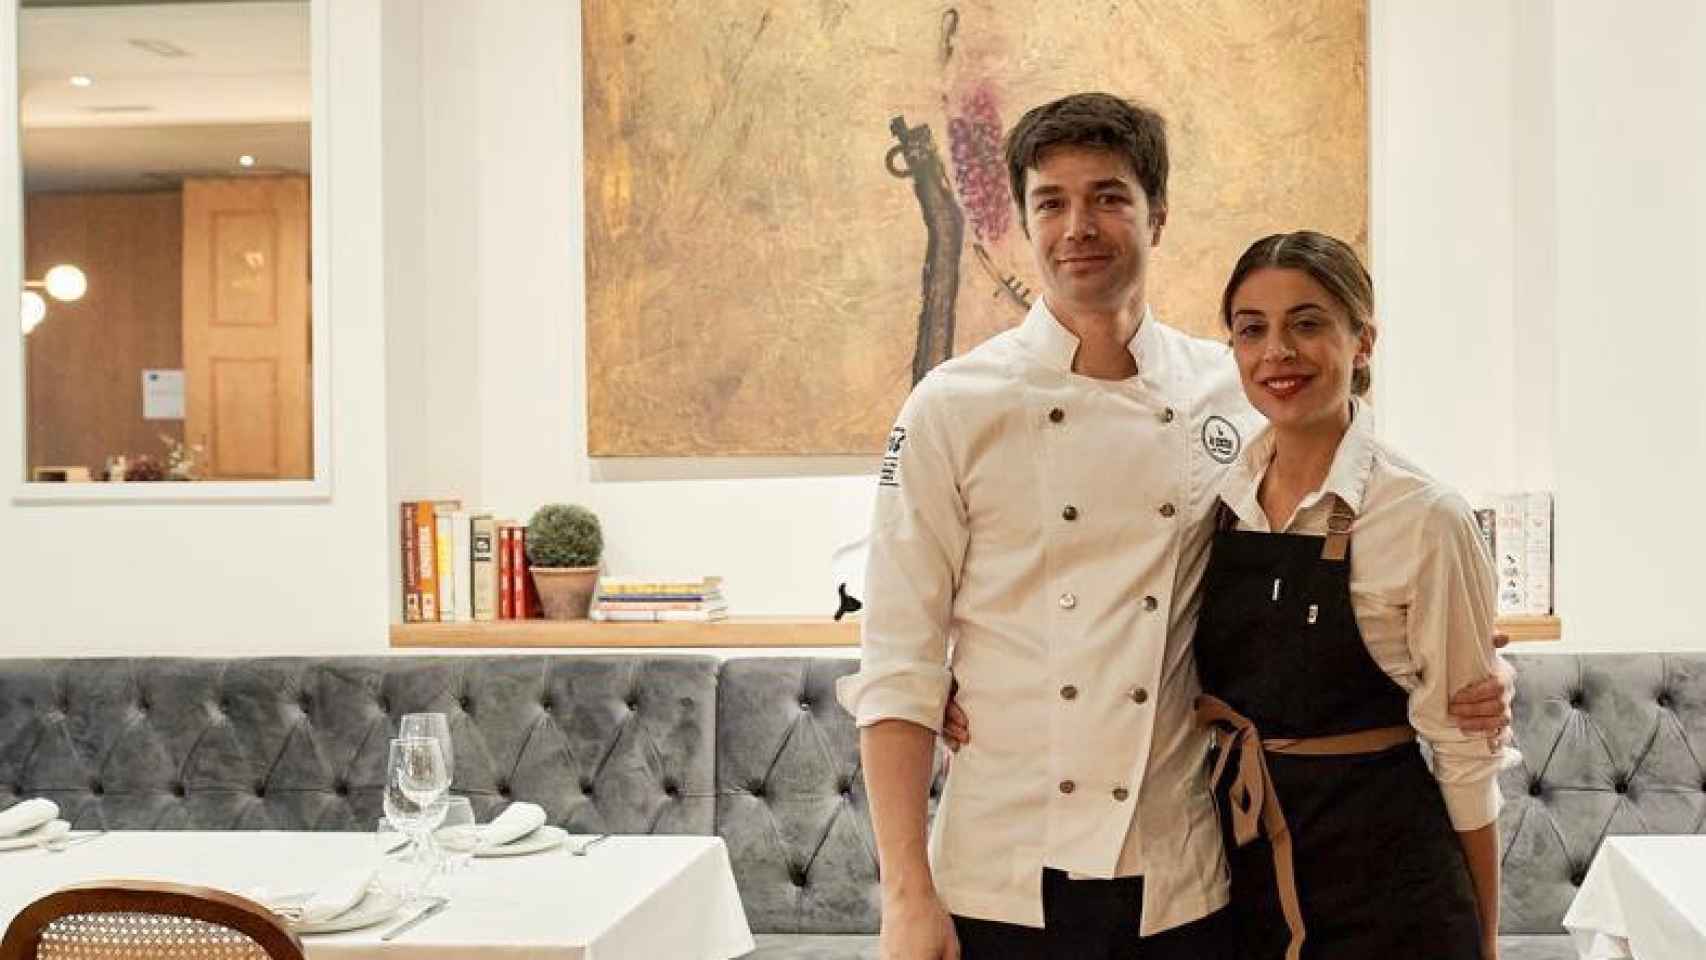 Manuel Soler y Esther Ovejero en su restaurante de Valladolid, recomendado por la Guía Michelin.